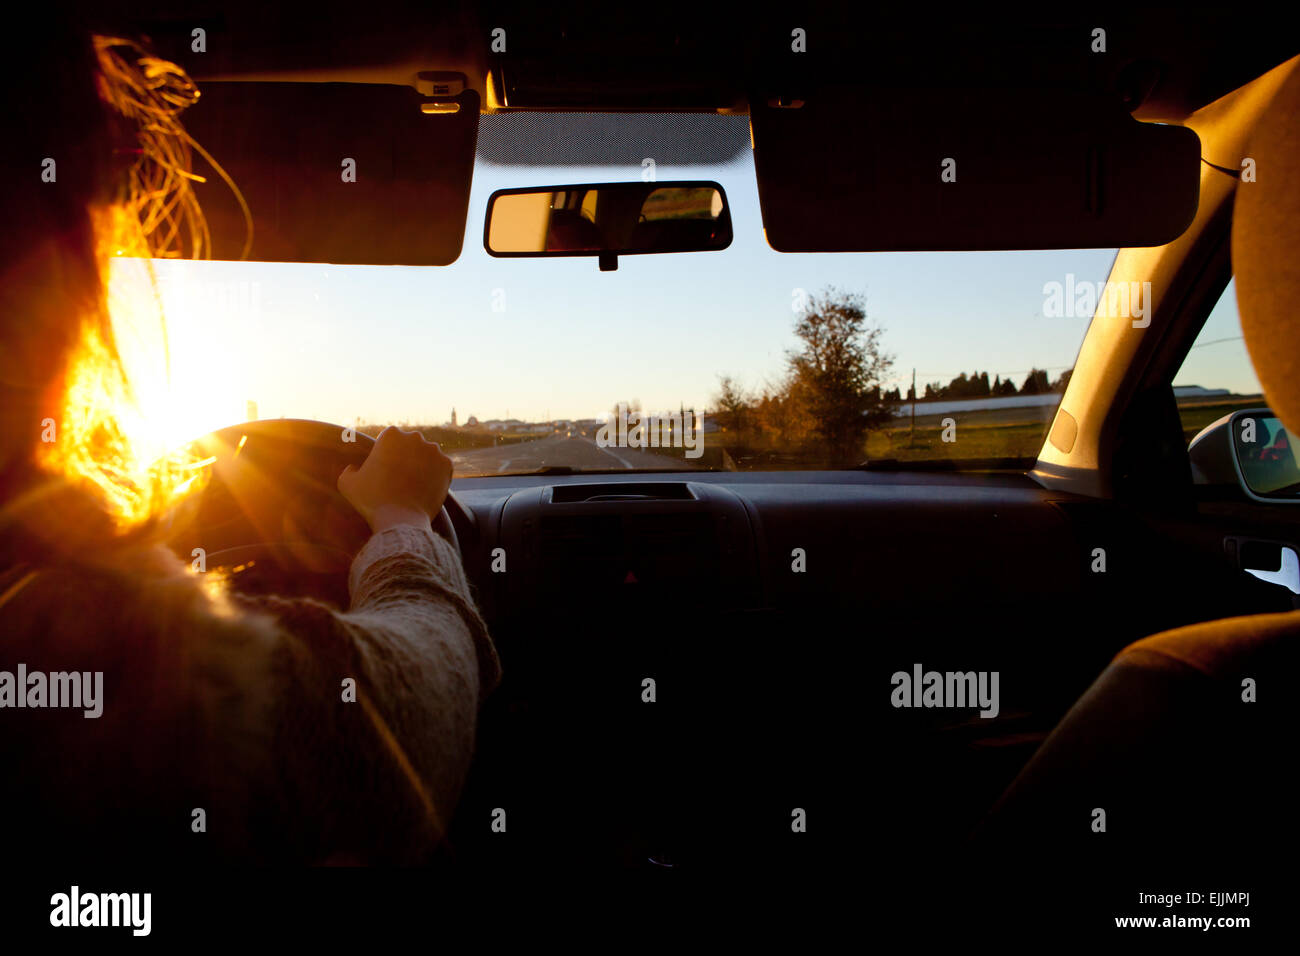 Eine Autofahrerin bei Sonnenuntergang. Probleme der Vision in diesem Tag Stunde Stockfoto